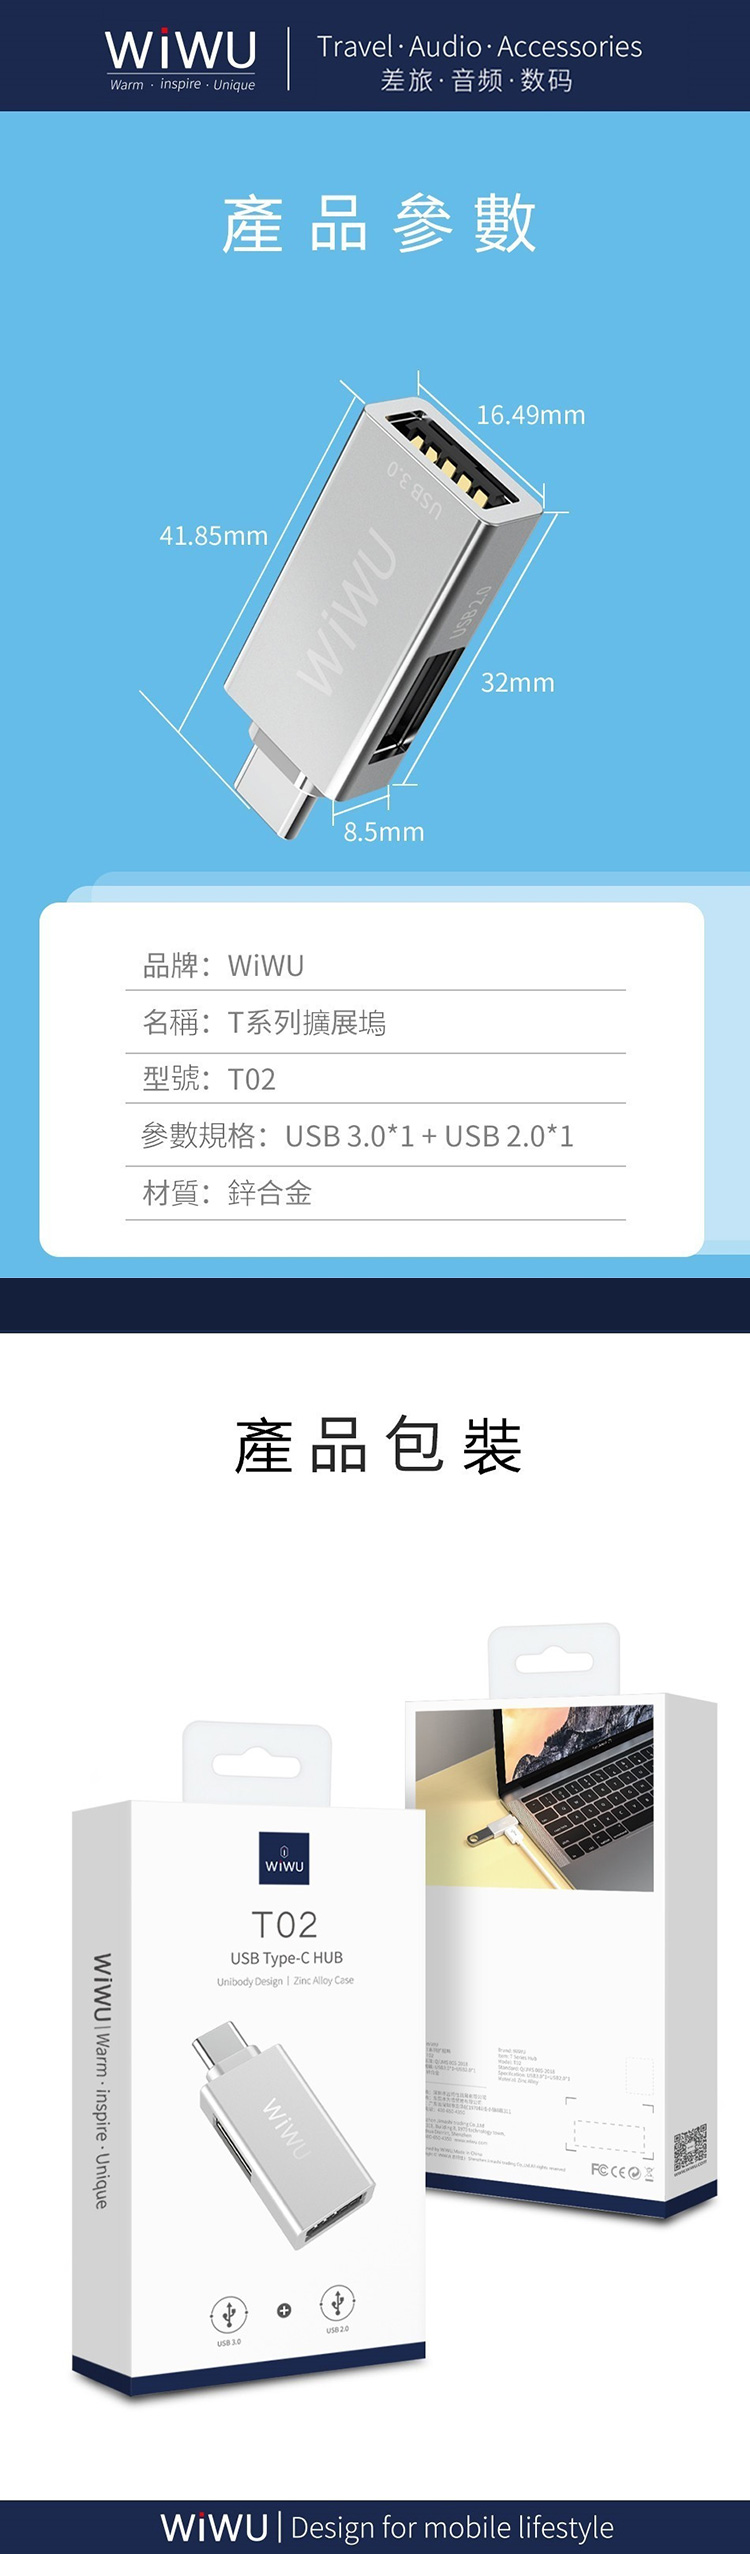 WIWU-T02-USB-TYPE-C-HUB-2.jpg